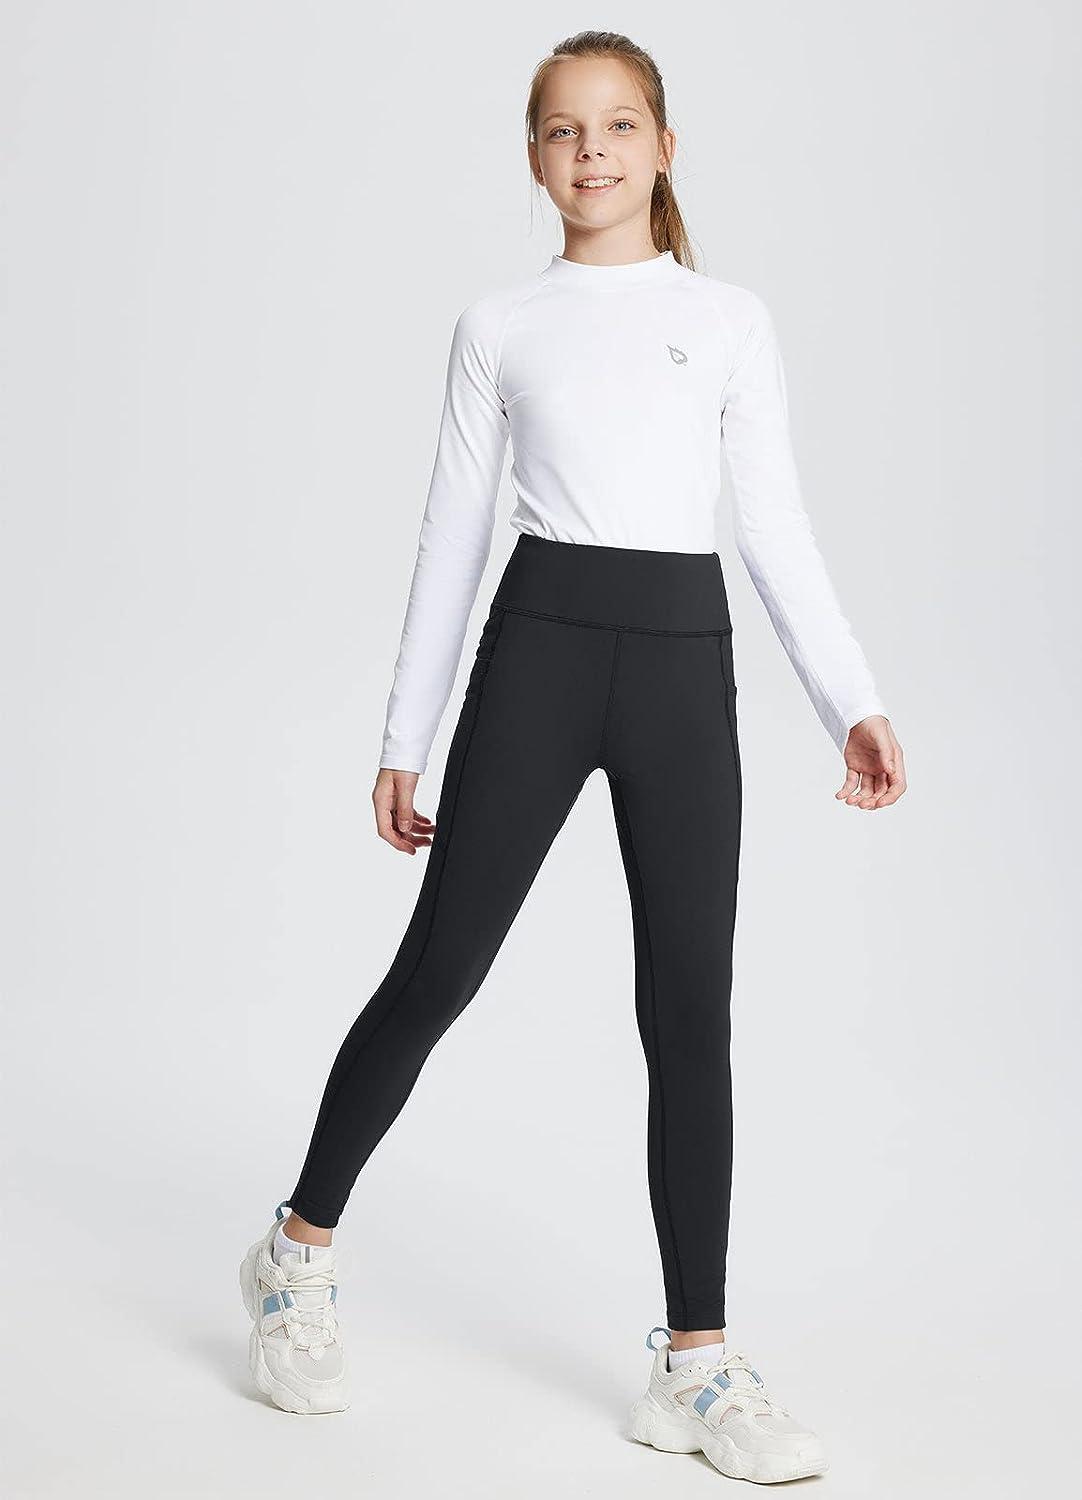 Athleta Navy/White fleece lined leggings zippers